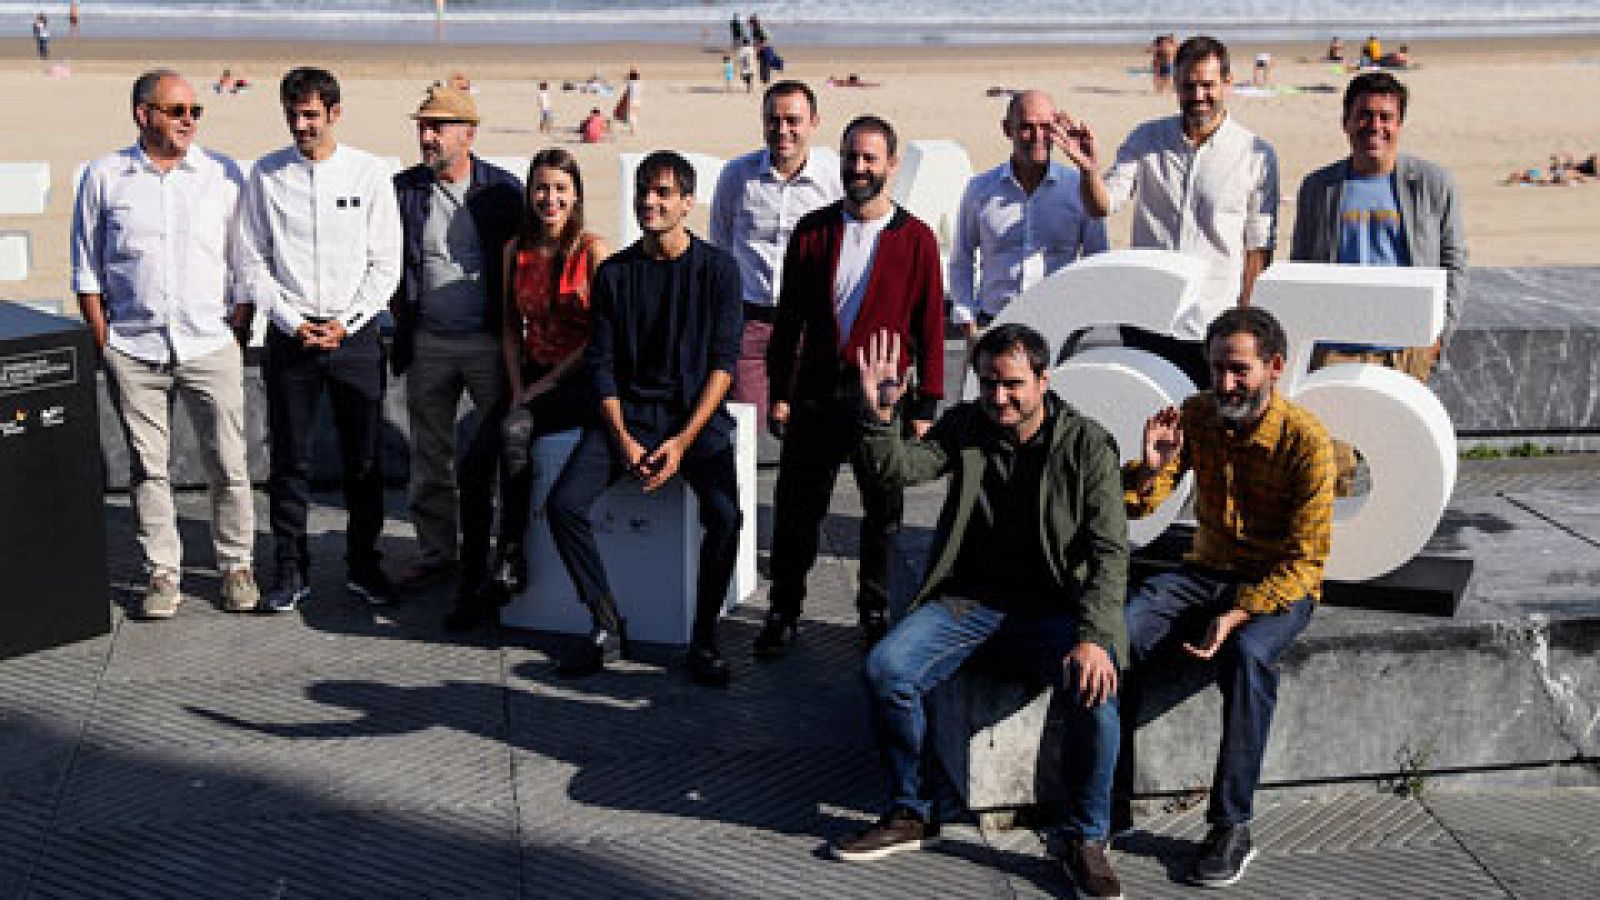 Los creadores de 'Loreak' presentan en San Sebastián 'Handia', una película de época sobre el gigante de Altzo